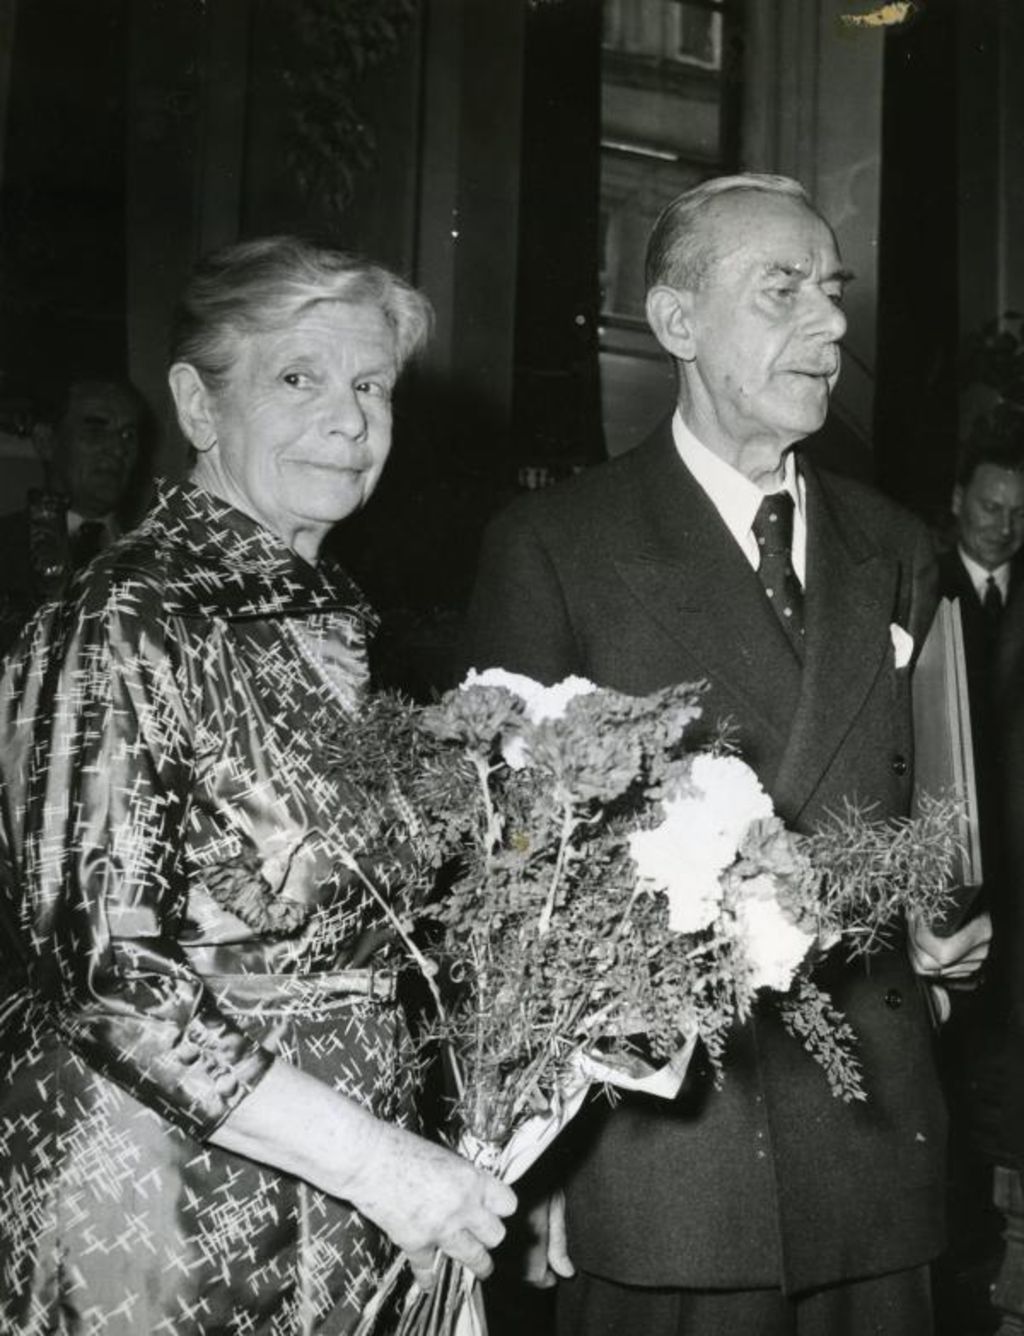 Foto: Katia und Thomas Mann bei der Verleihung der Ehrenbürgerschaft seiner Geburtsstadt Lübeck, 1955